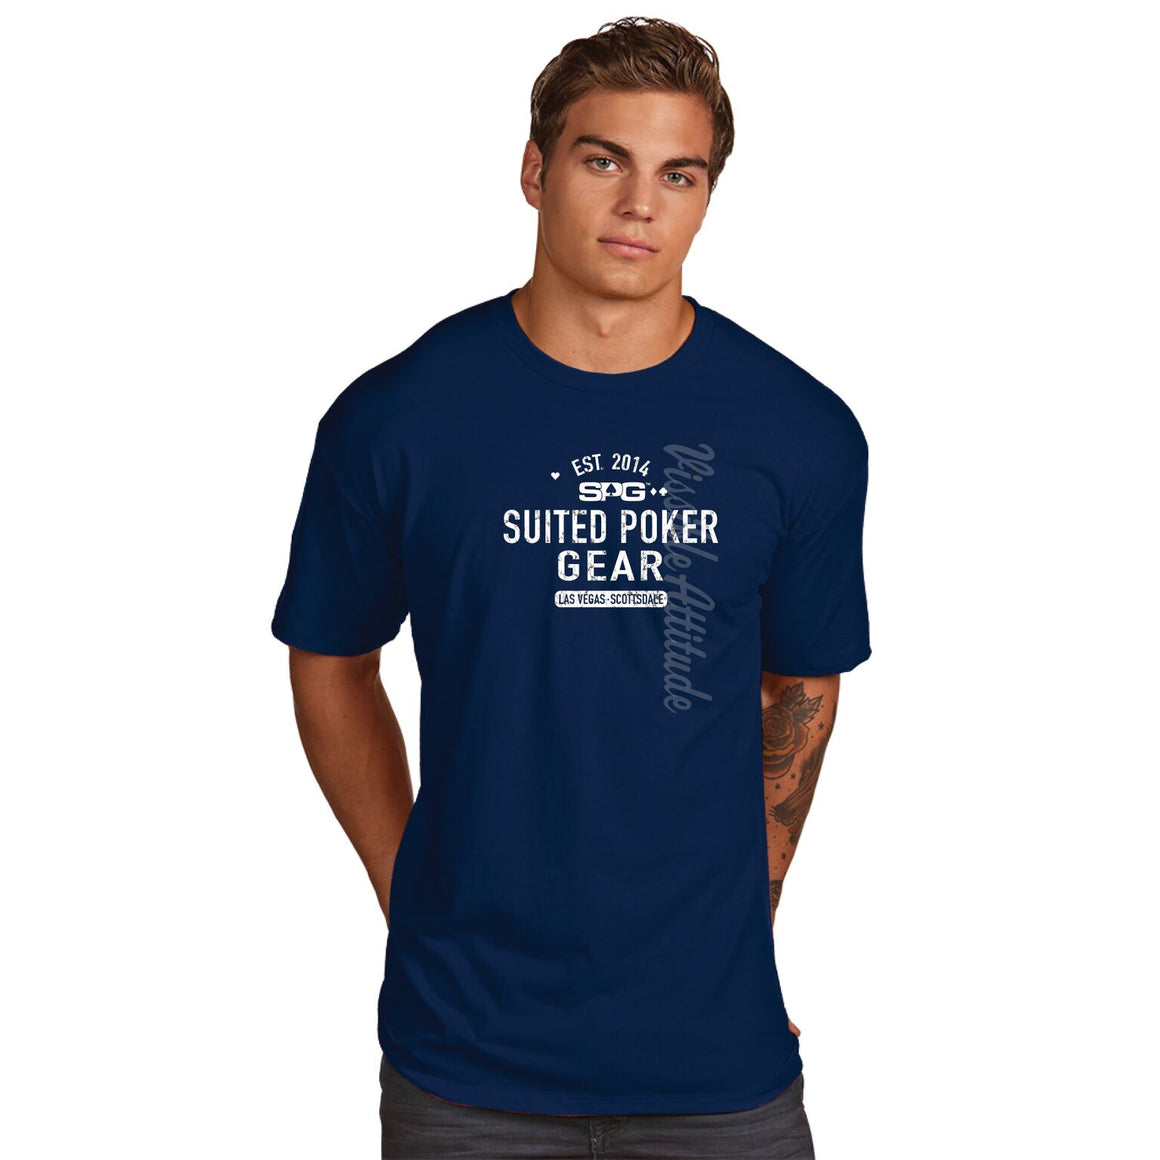 SPG "Established 2014" T-Shirt - Suited Poker Gear